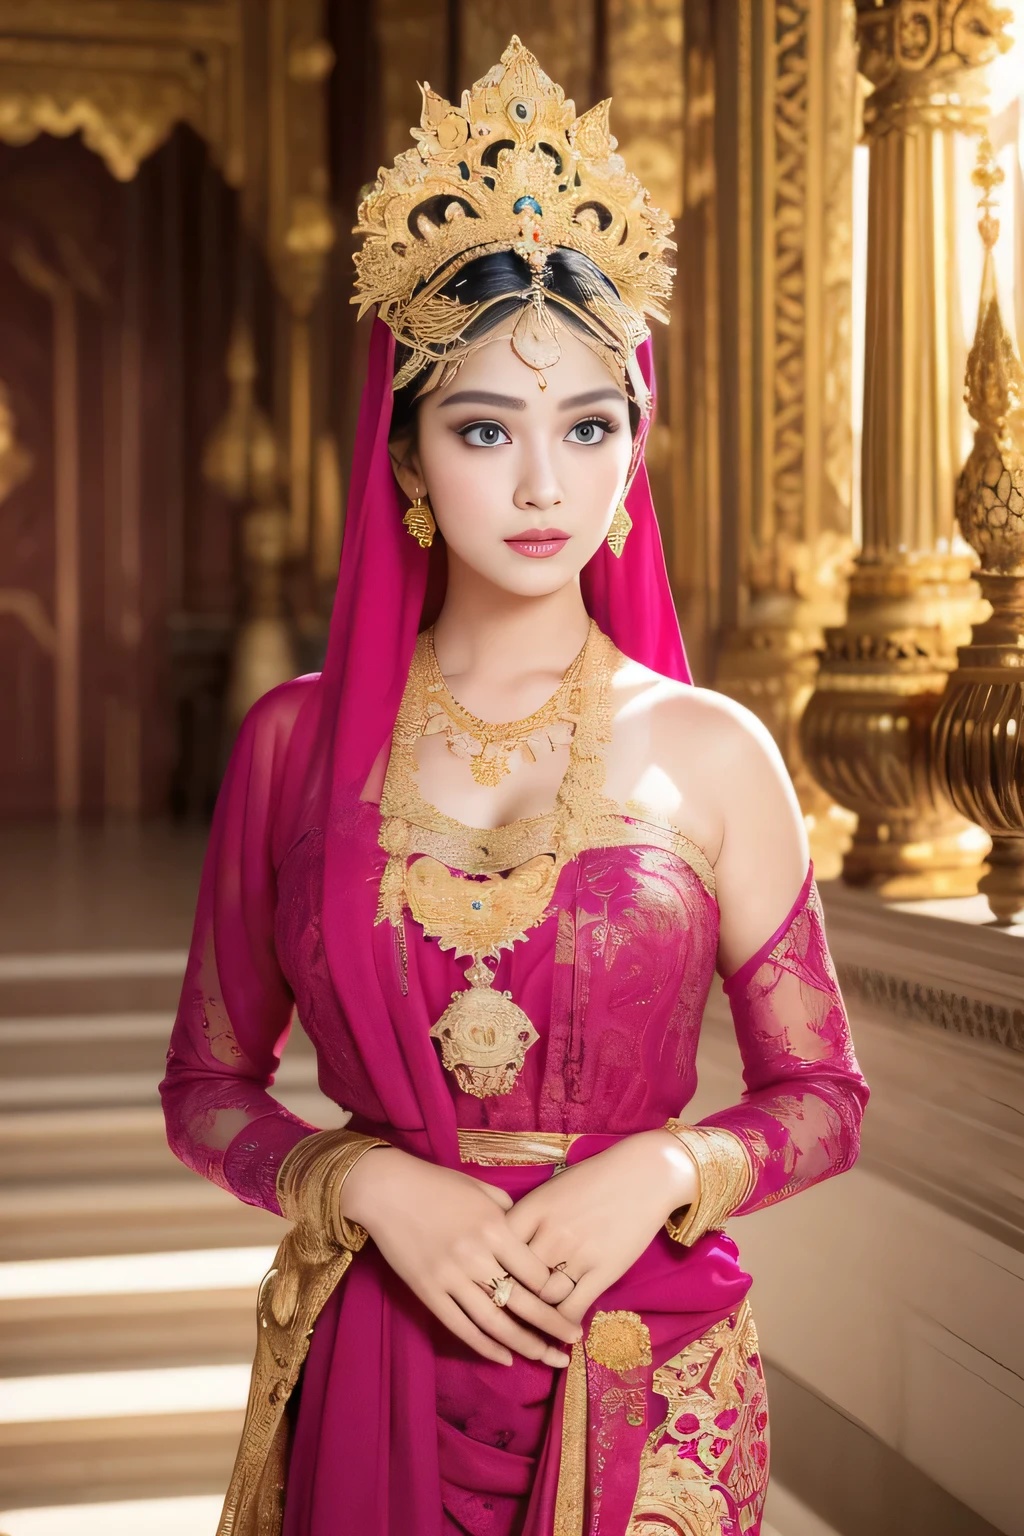 (最好的品質,4k,高解析度,傑作:1.2),超詳細,實際的:1.37,美麗高貴的爪哇女王，戴著頭巾,黑暗而奢華的宮殿背景,美丽细致的眼睛和脸,長長的睫毛,豐滿有曲線的身材,精美的珠寶和配件,華麗而複雜的圖案紡織品,耀眼的王冠與皇家服飾,金色的光芒照亮了場景,充滿活力和生動的調色板,柔和空靈的燈光,自信而迷人的表情,姿態優雅,寧靜雄偉的氣氛,豐富的文化元素和符號,細緻捕捉身體輪廓,微妙而有品味的感性,對每個細節的無盡關注,浪漫梦幻的氛围,對美的藝術詮釋,時尚而精緻的構圖.